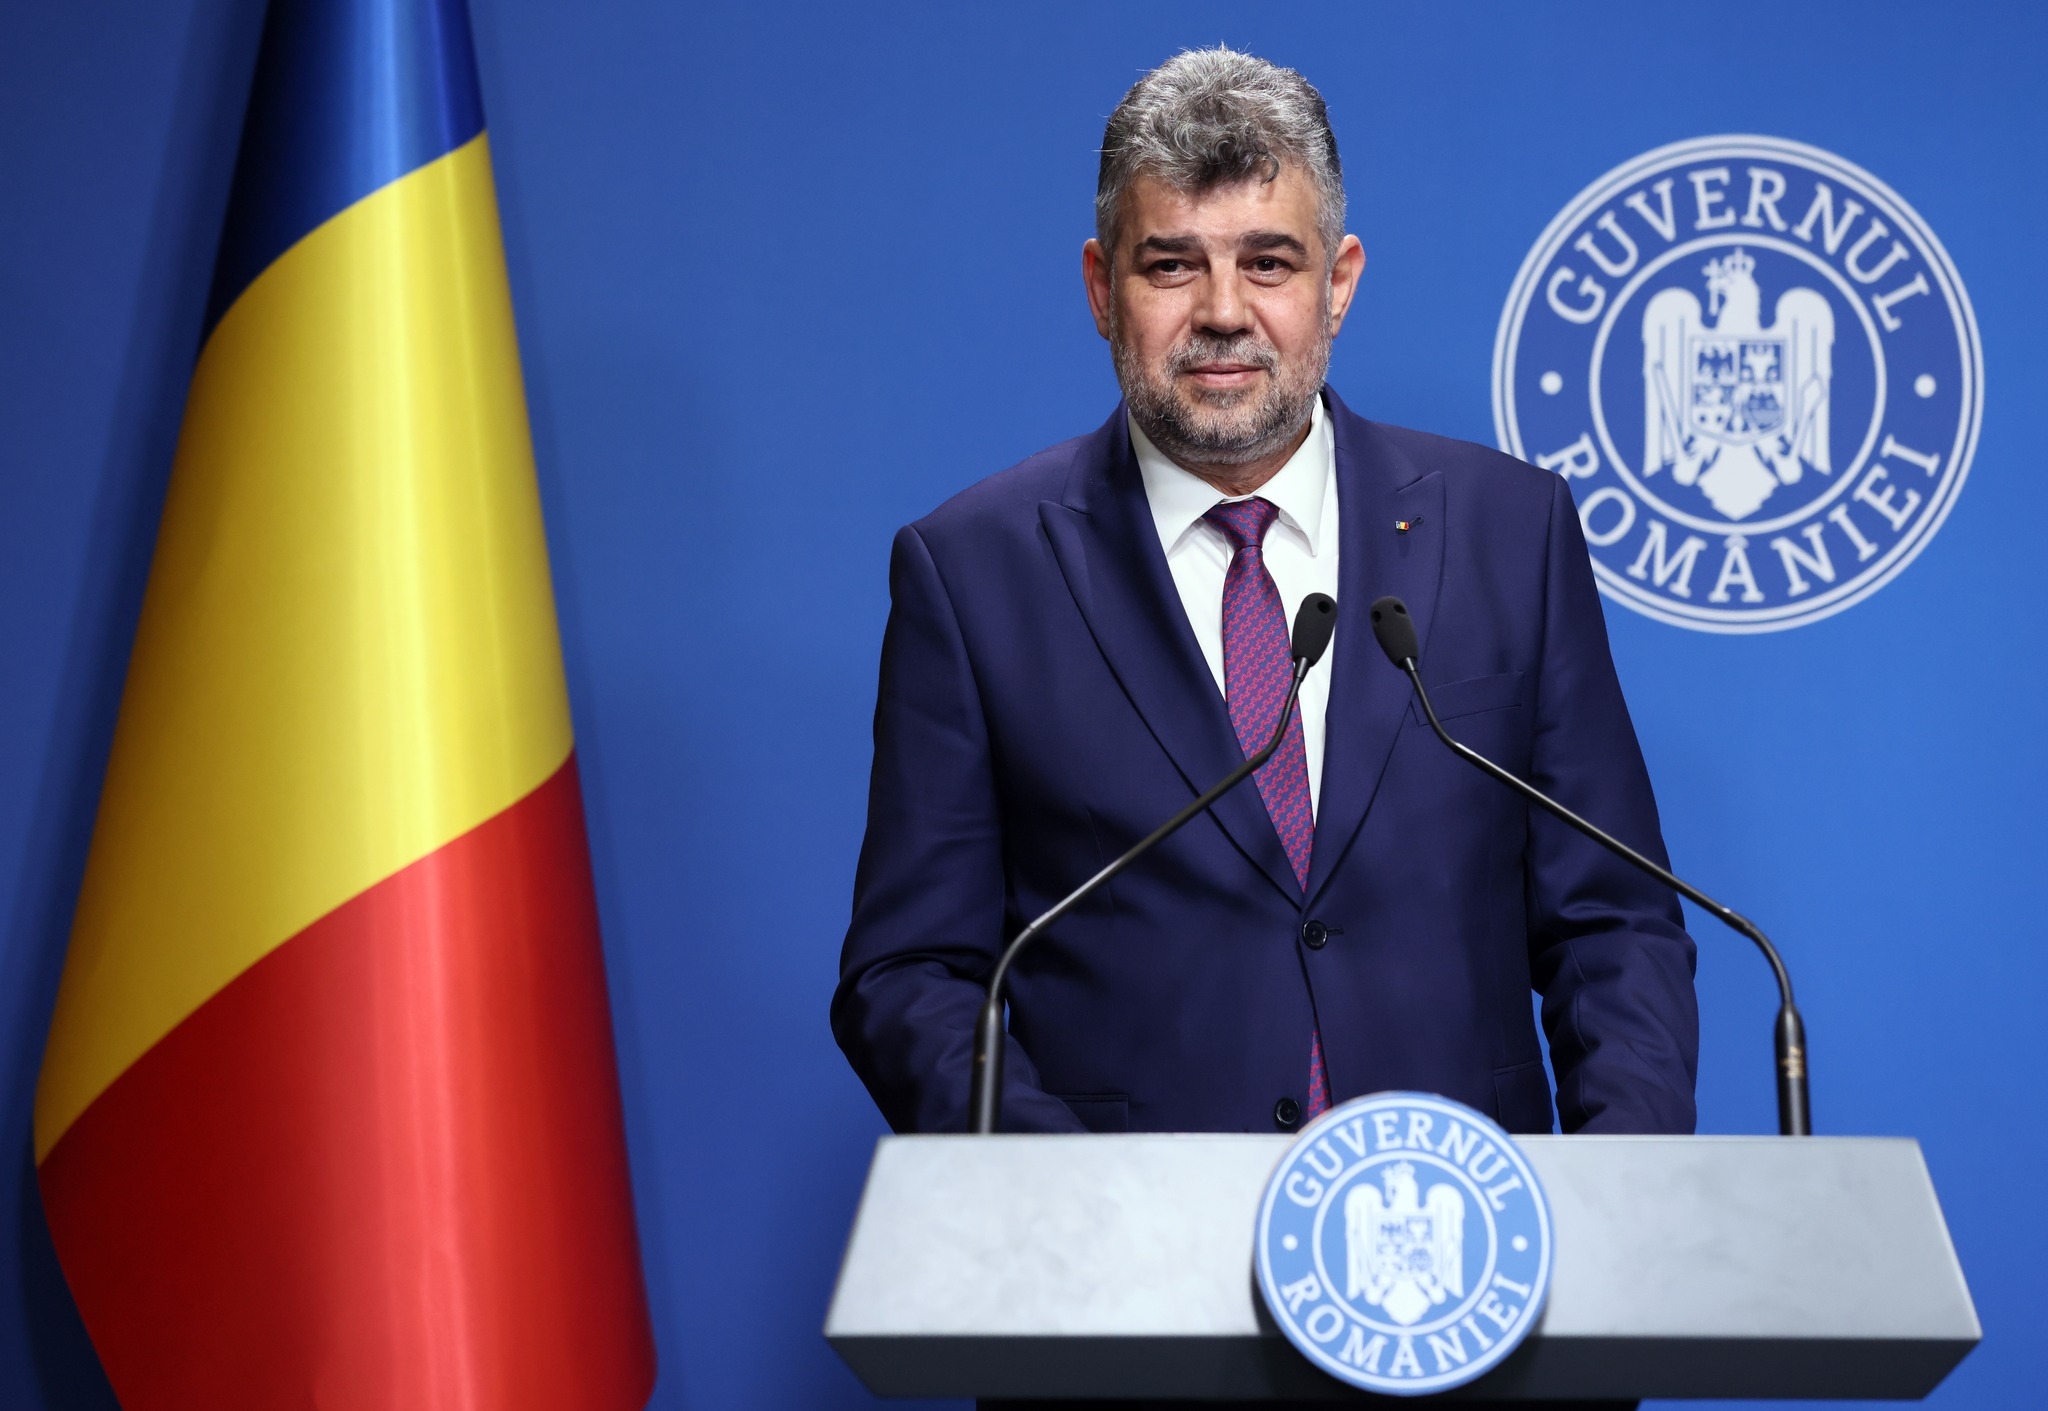 A bérek terén Románia már megelőzte Magyarországot – ezzel büszkélkedett a román miniszterelnök